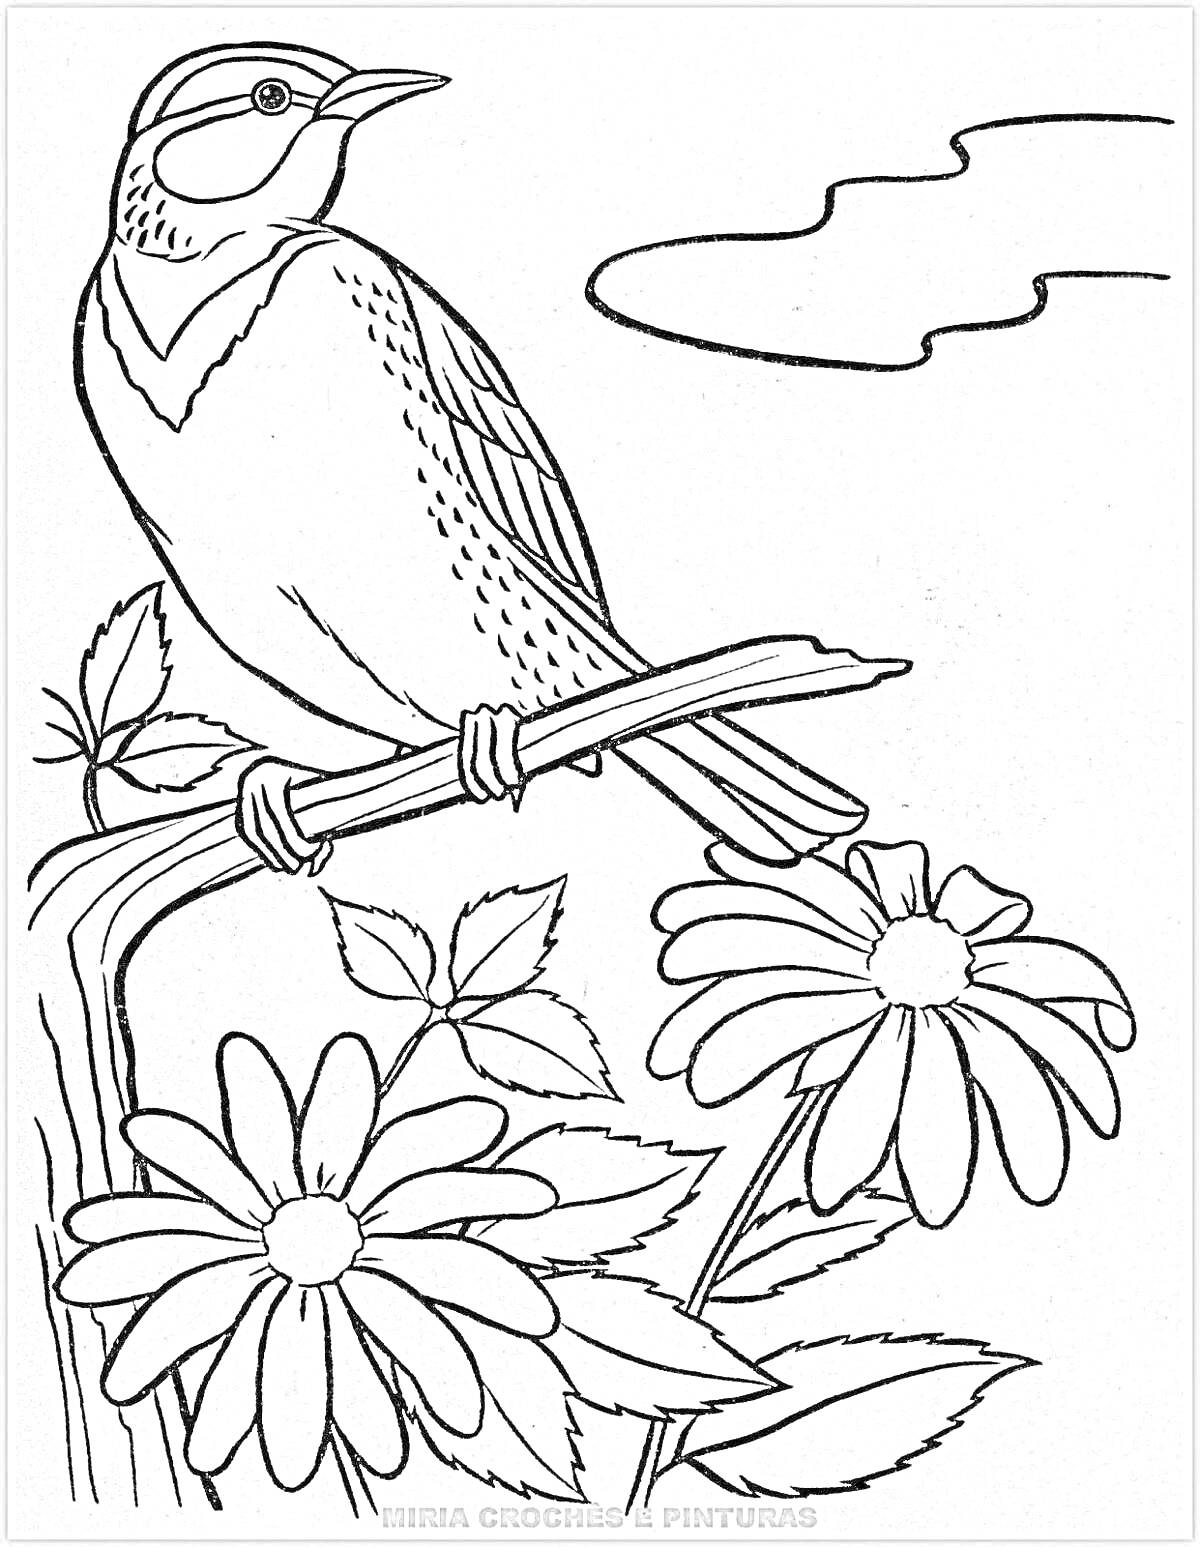 Раскраска Птица на ветке с двумя большими цветами ромашки и облаками на заднем плане.